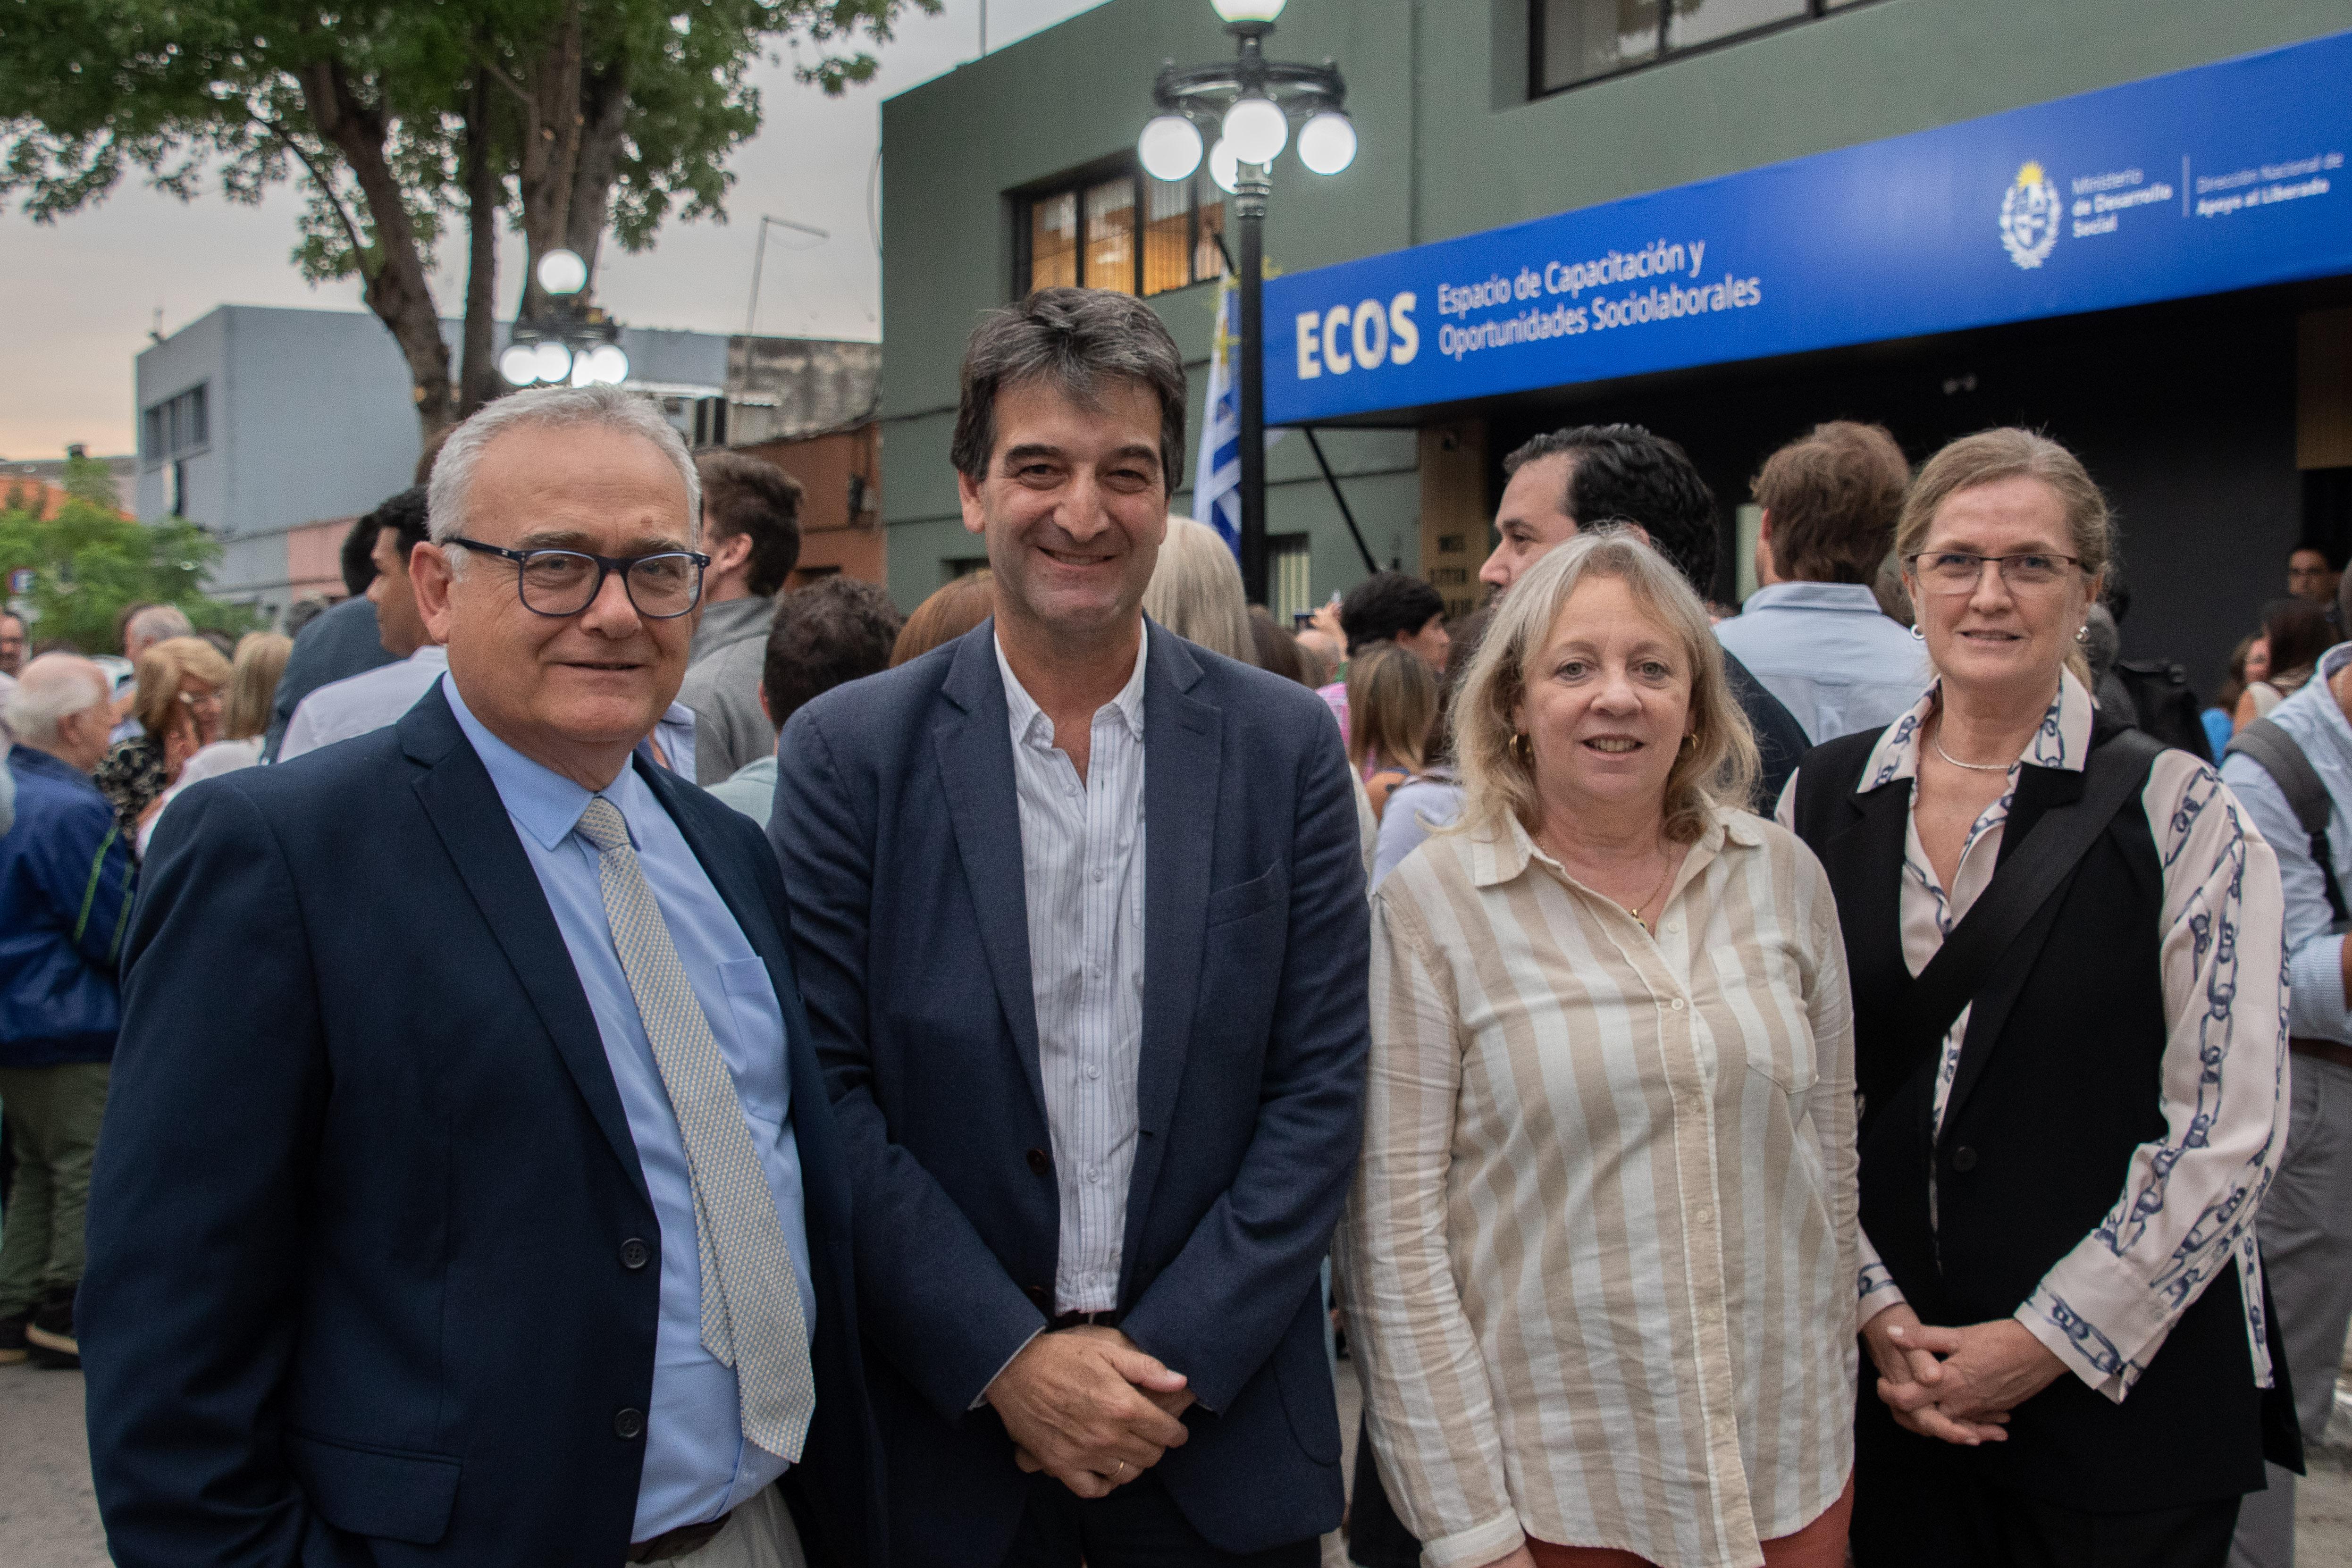 Inauguración de ECOS, Espacio de Capacitación y Oportunidades Sociolaborales